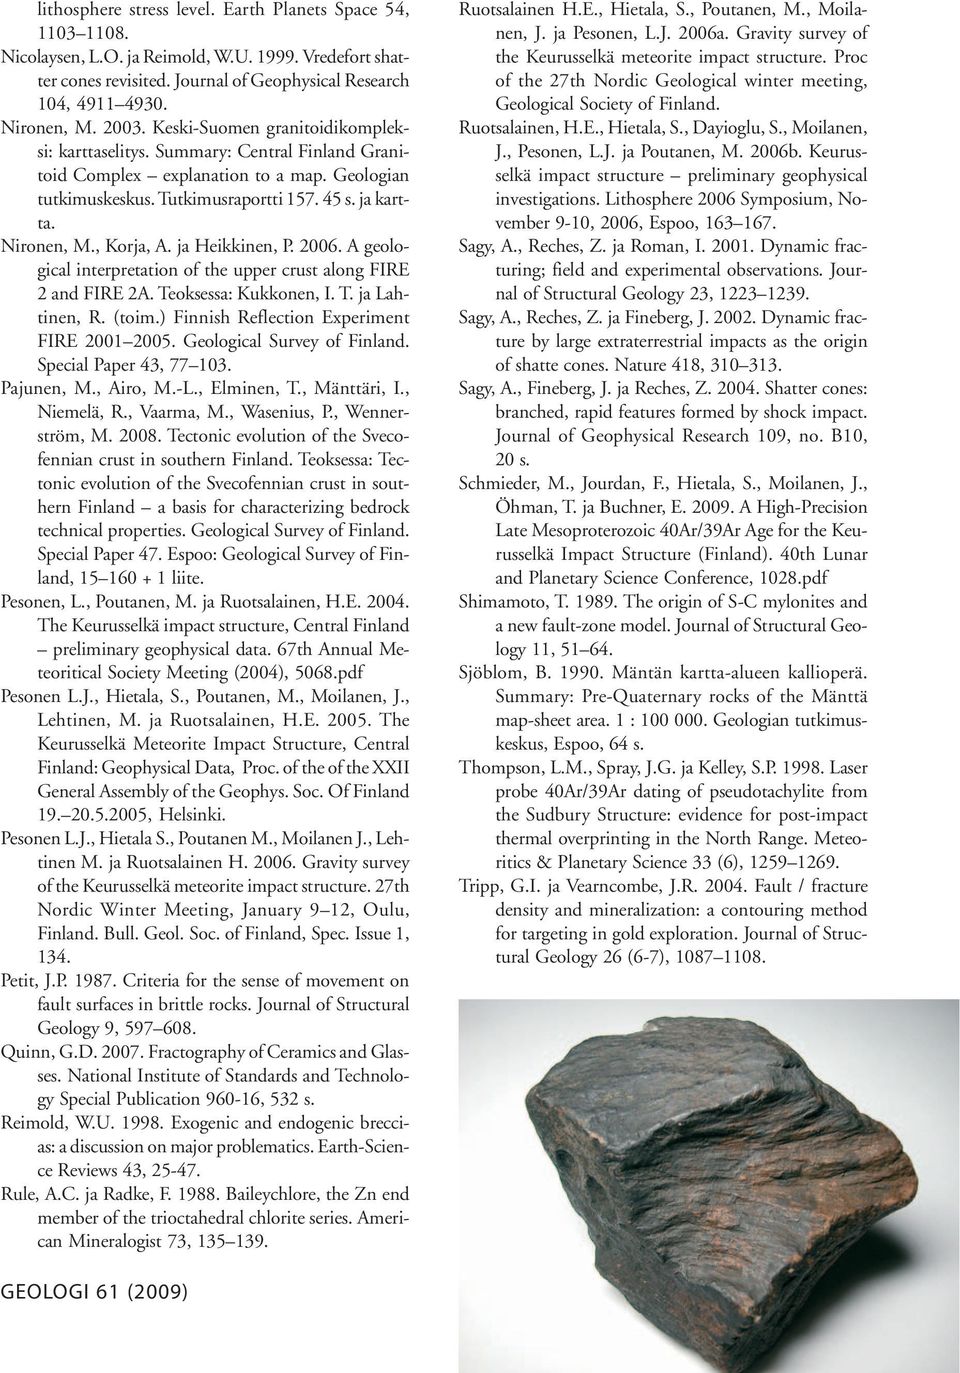 , Korja, A. ja Heikkinen, P. 2006. A geological interpretation of the upper crust along FIRE 2 and FIRE 2A. Teoksessa: Kukkonen, I. T. ja Lahtinen, R. (toim.